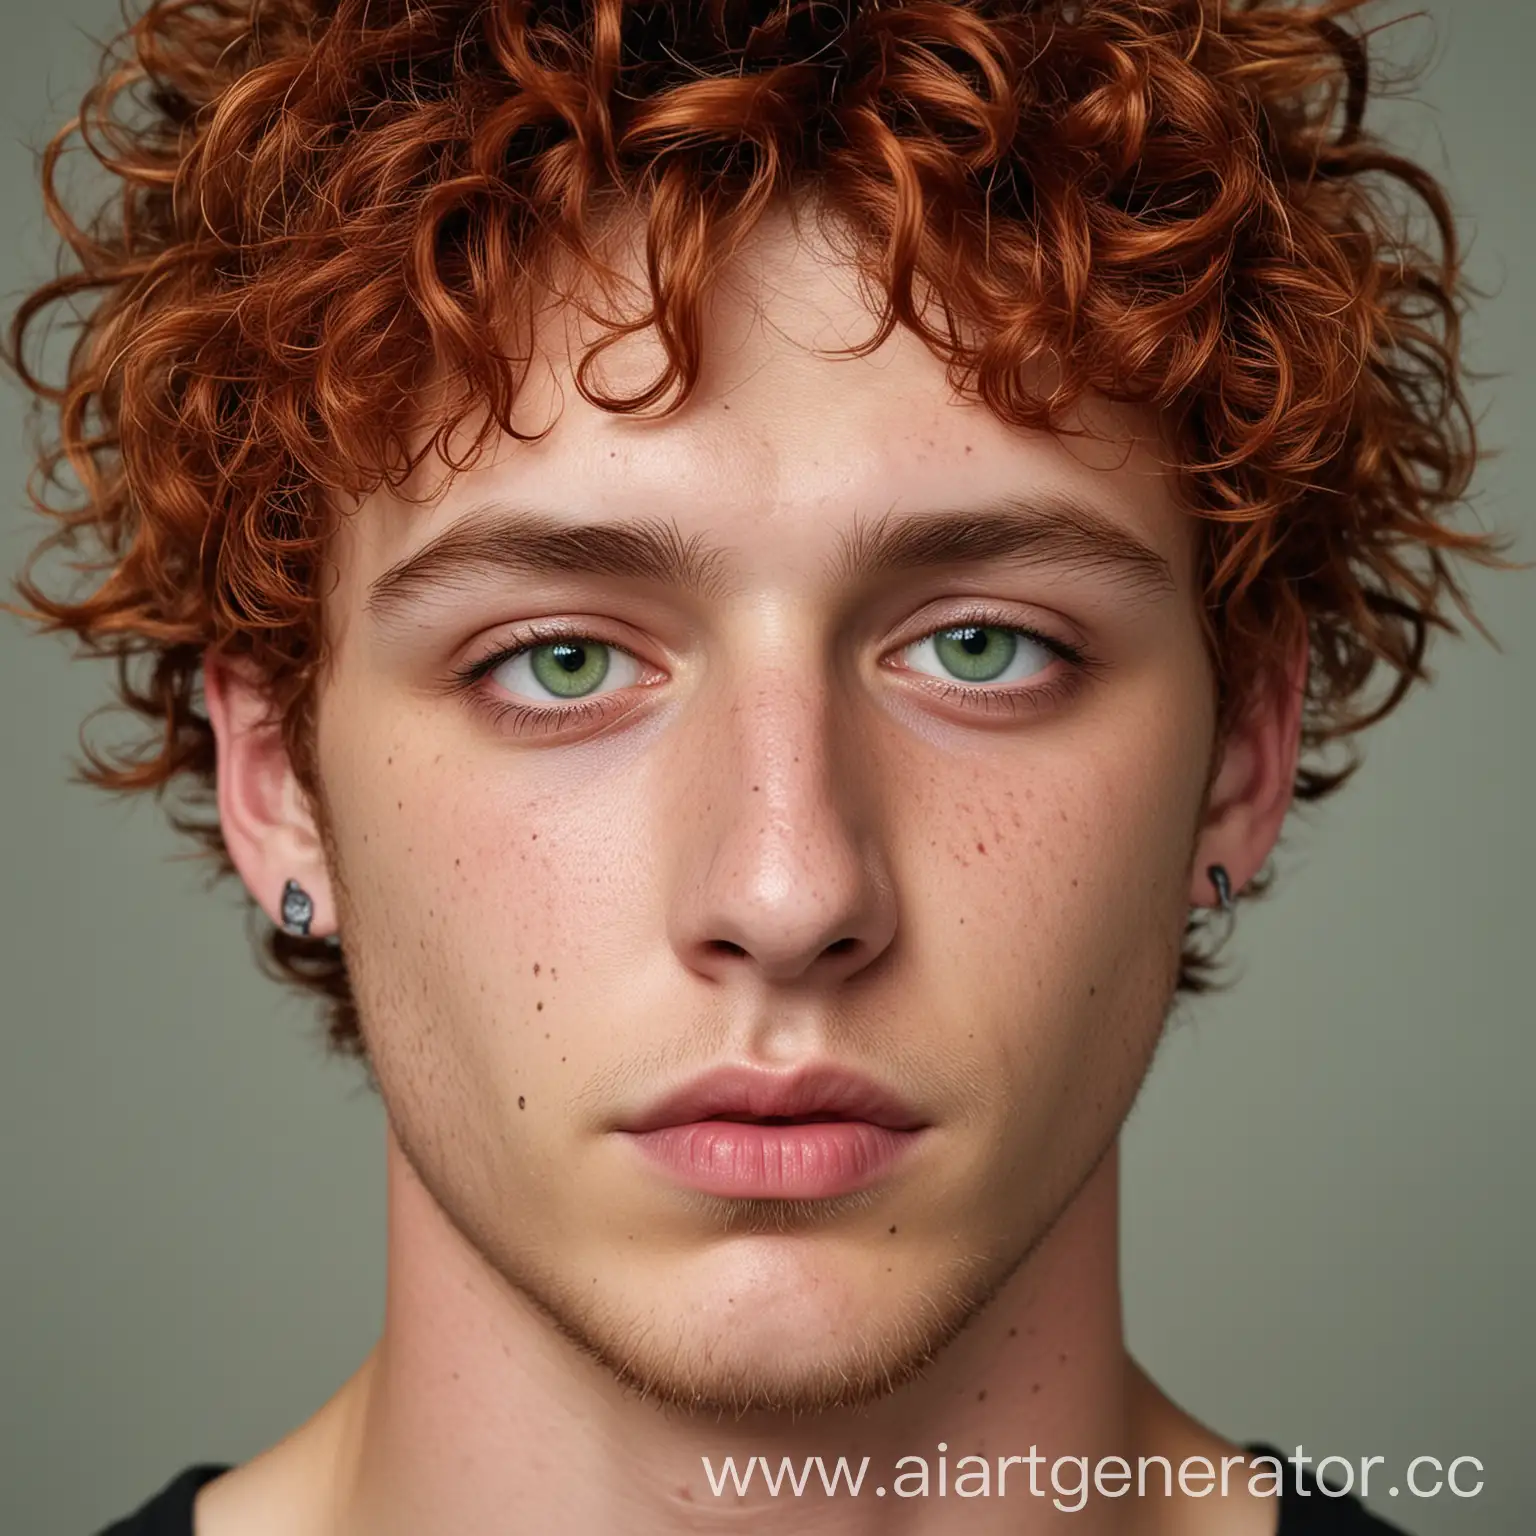 молодой парень, 20 лет, с рыжими кудрявыми волосами, зелёными глазами, веки нависшие, нос с маленькой горбинкой, губы пухлые, нарисованный
